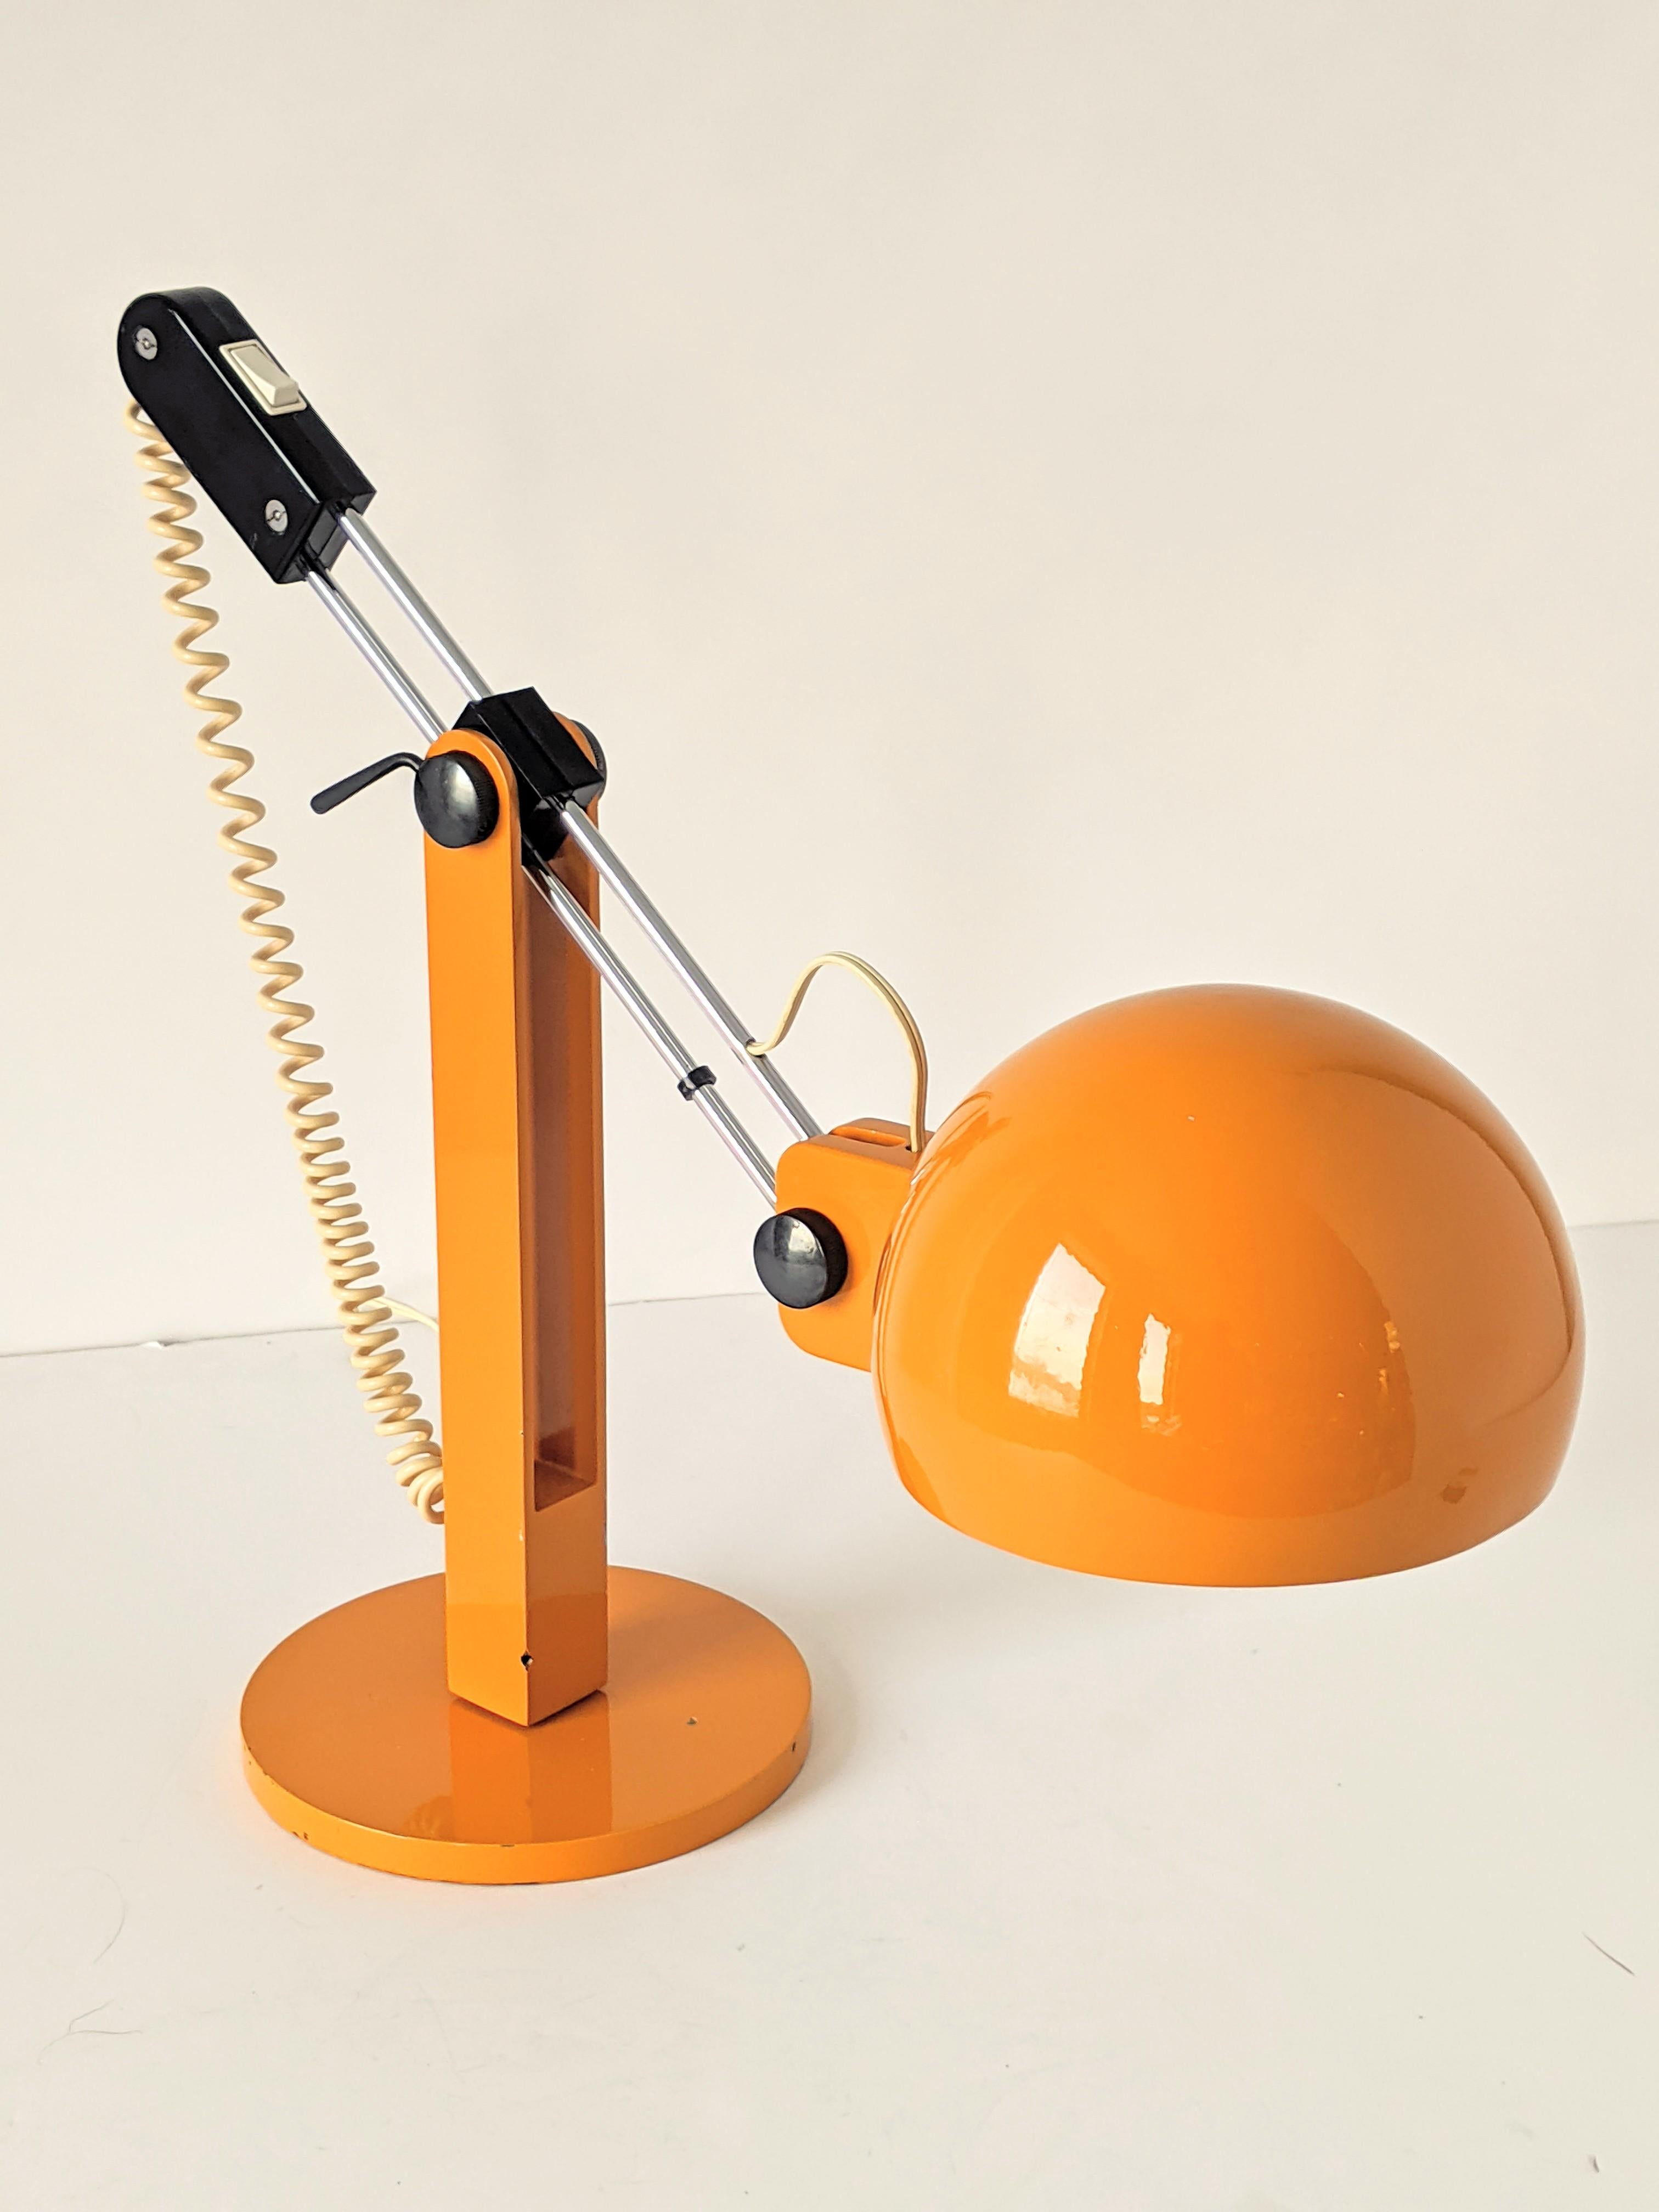 Lampe de table robuste et bien faite par Miguel Milá pour Tramo.

Matériau de première qualité et matériel solide et épais. 

Bakélite noire (pas de plastique). 

Extrêmement agile, il bouge, glisse (comme un trombone), s'incline, s'incline